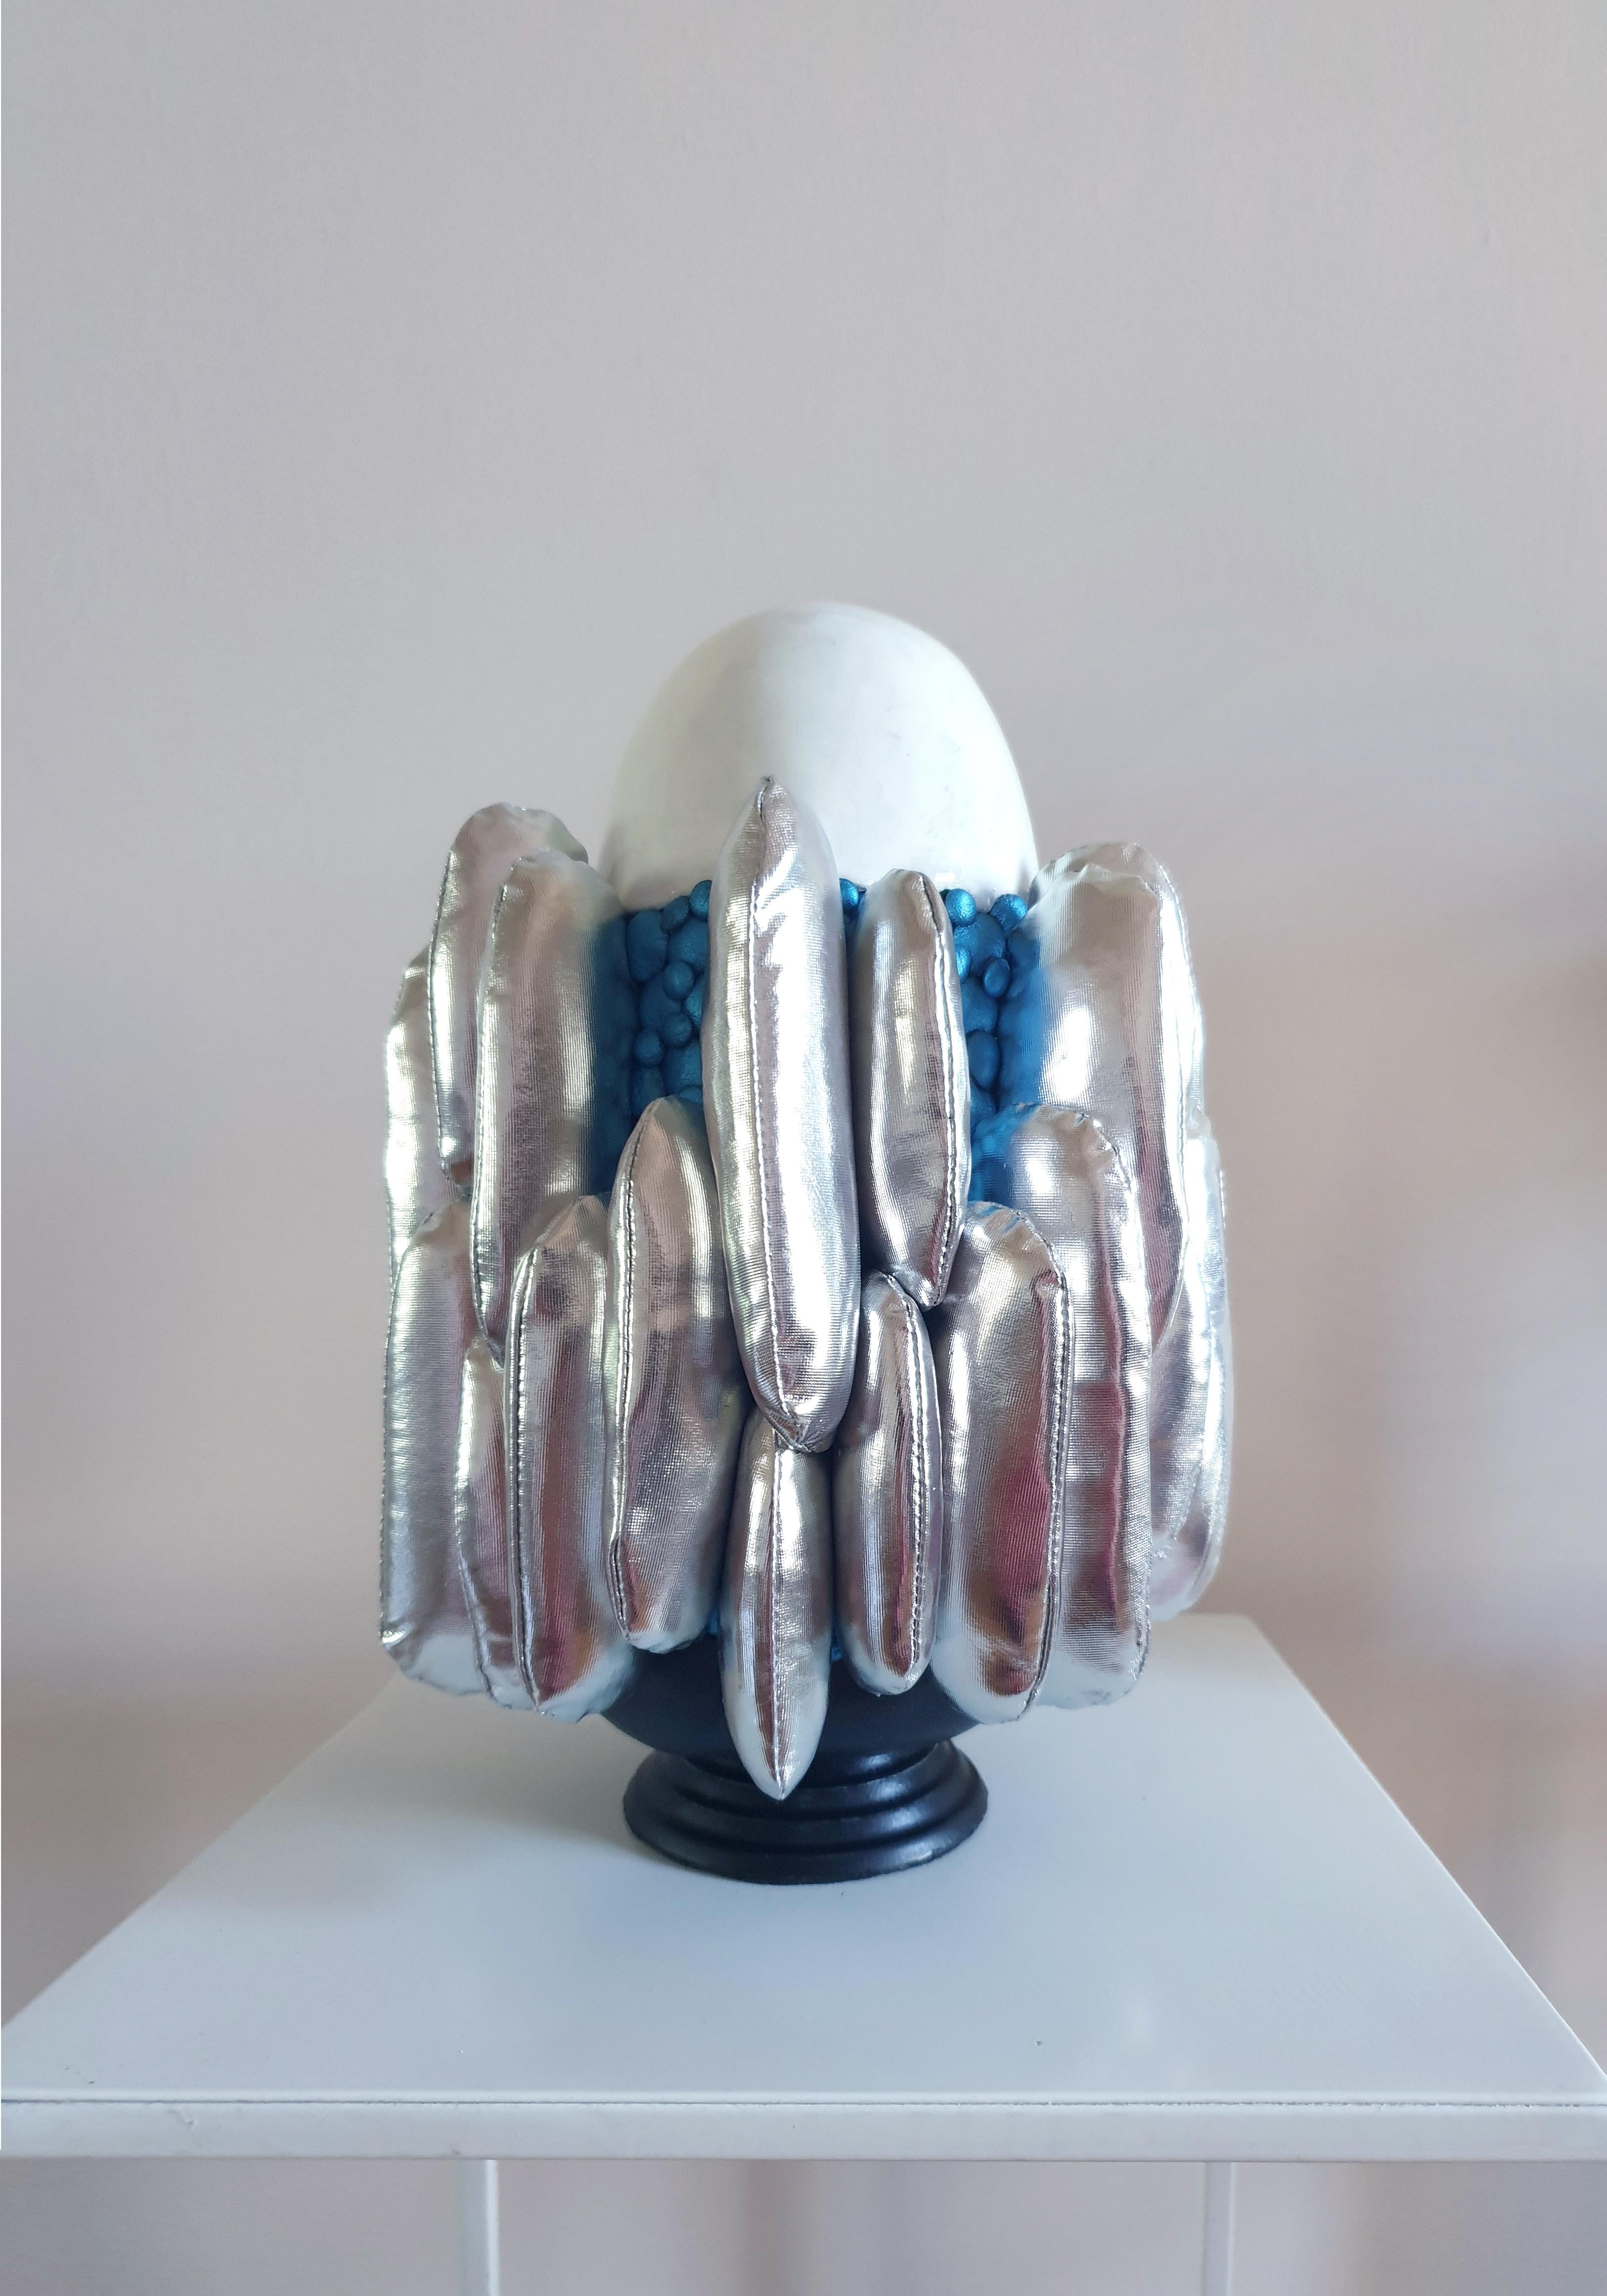 Olga Radionova Abstract Sculpture - Ice vibes 2.0. "Emotional states" series